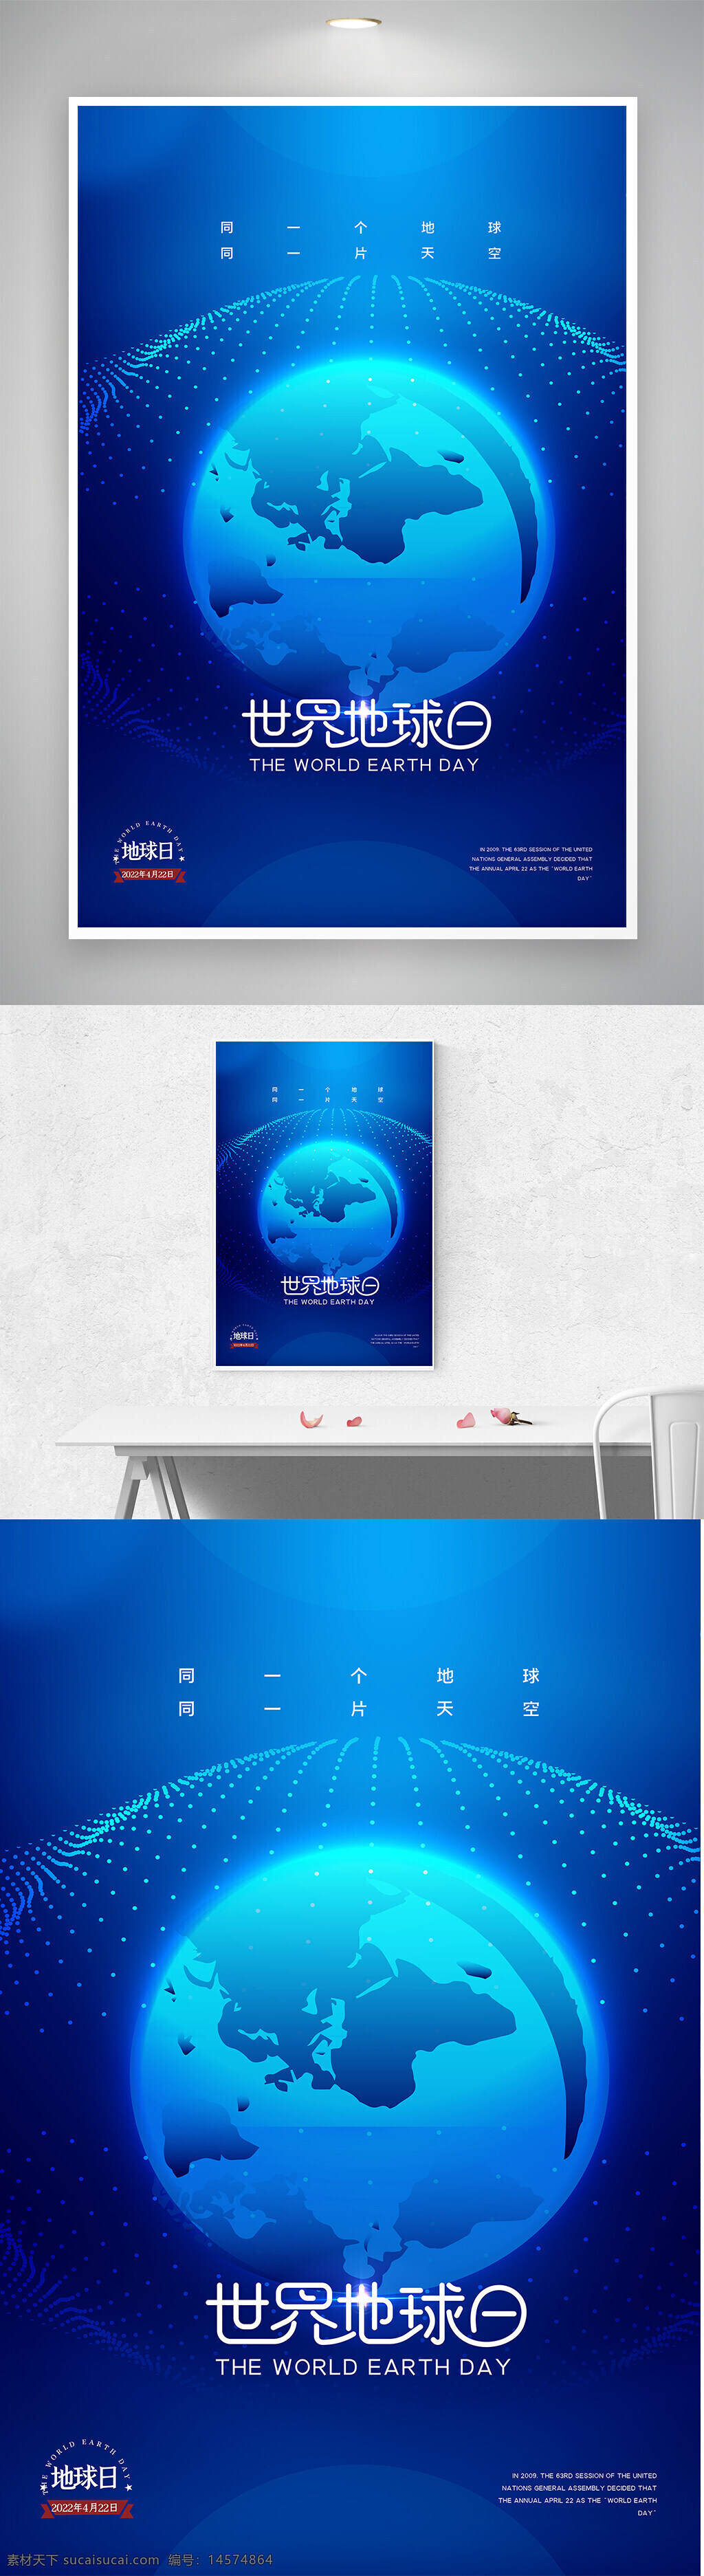 大气 蓝色 科技风 世界地球日 宣传 海报